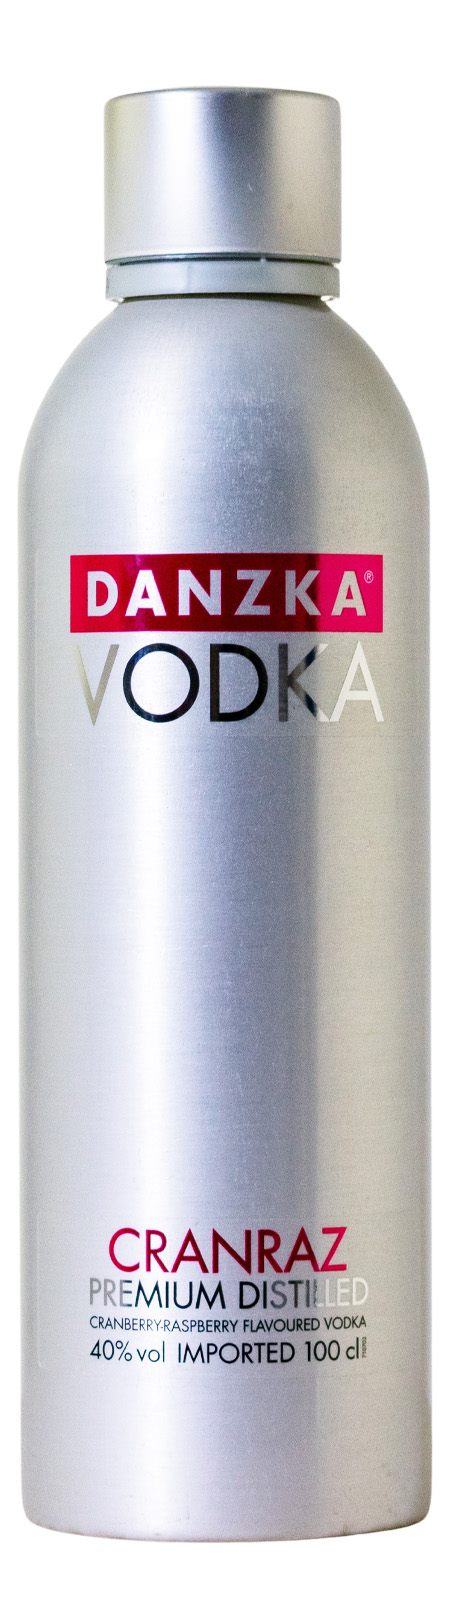 (1L) Vodka Cranraz Danish kaufen Danzka günstig